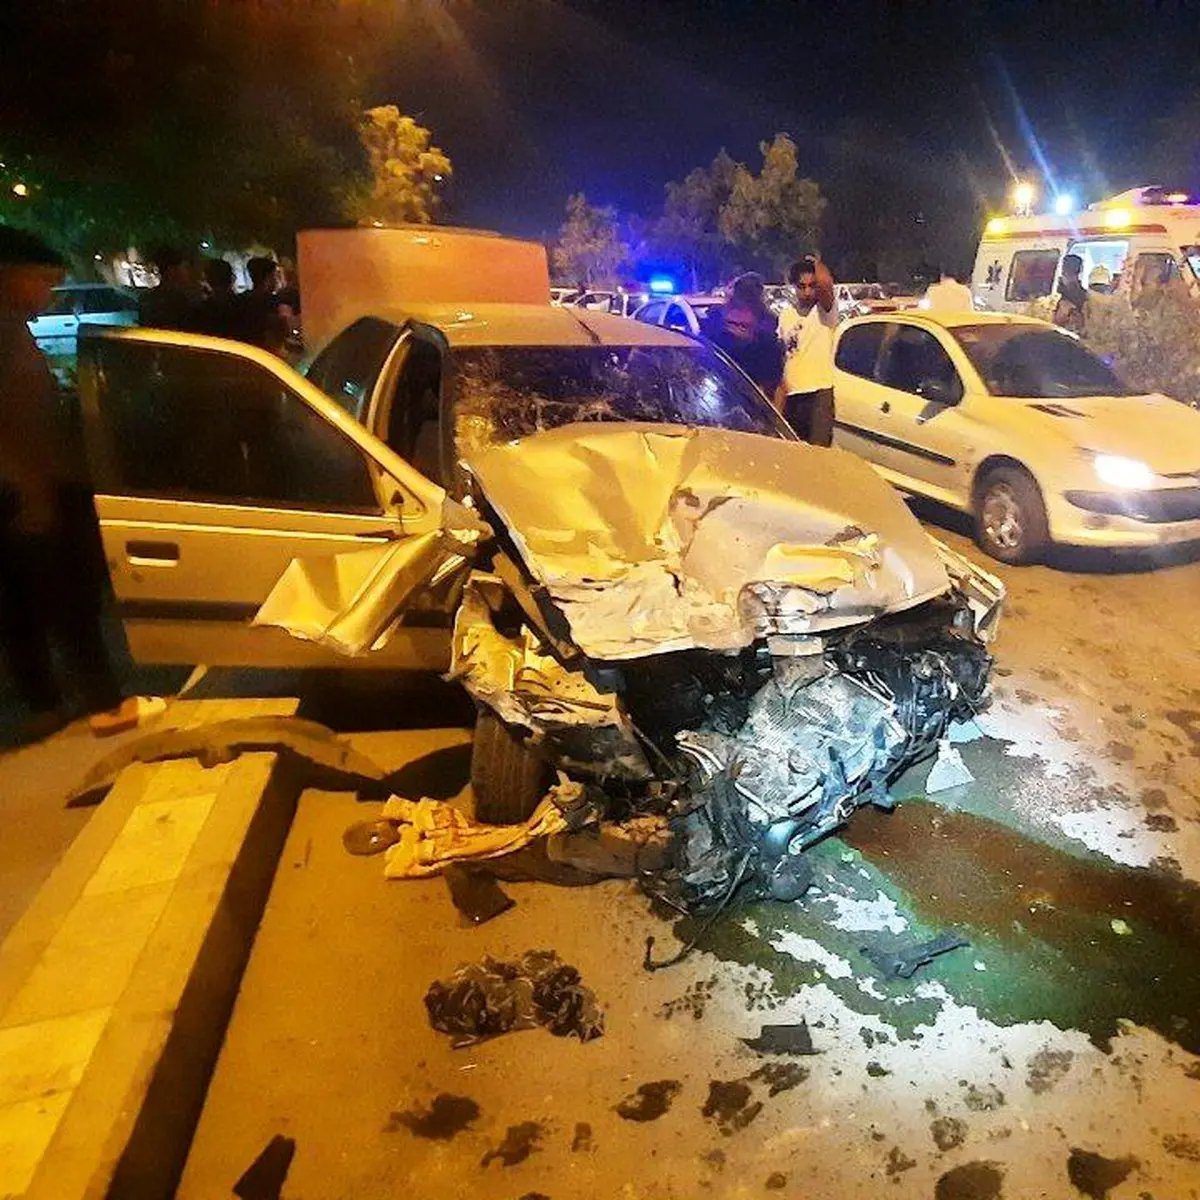 وکیل آباد مشهد بازهم حادثه ساز شد/ مرگ زن جوان در حادثه رانندگی 